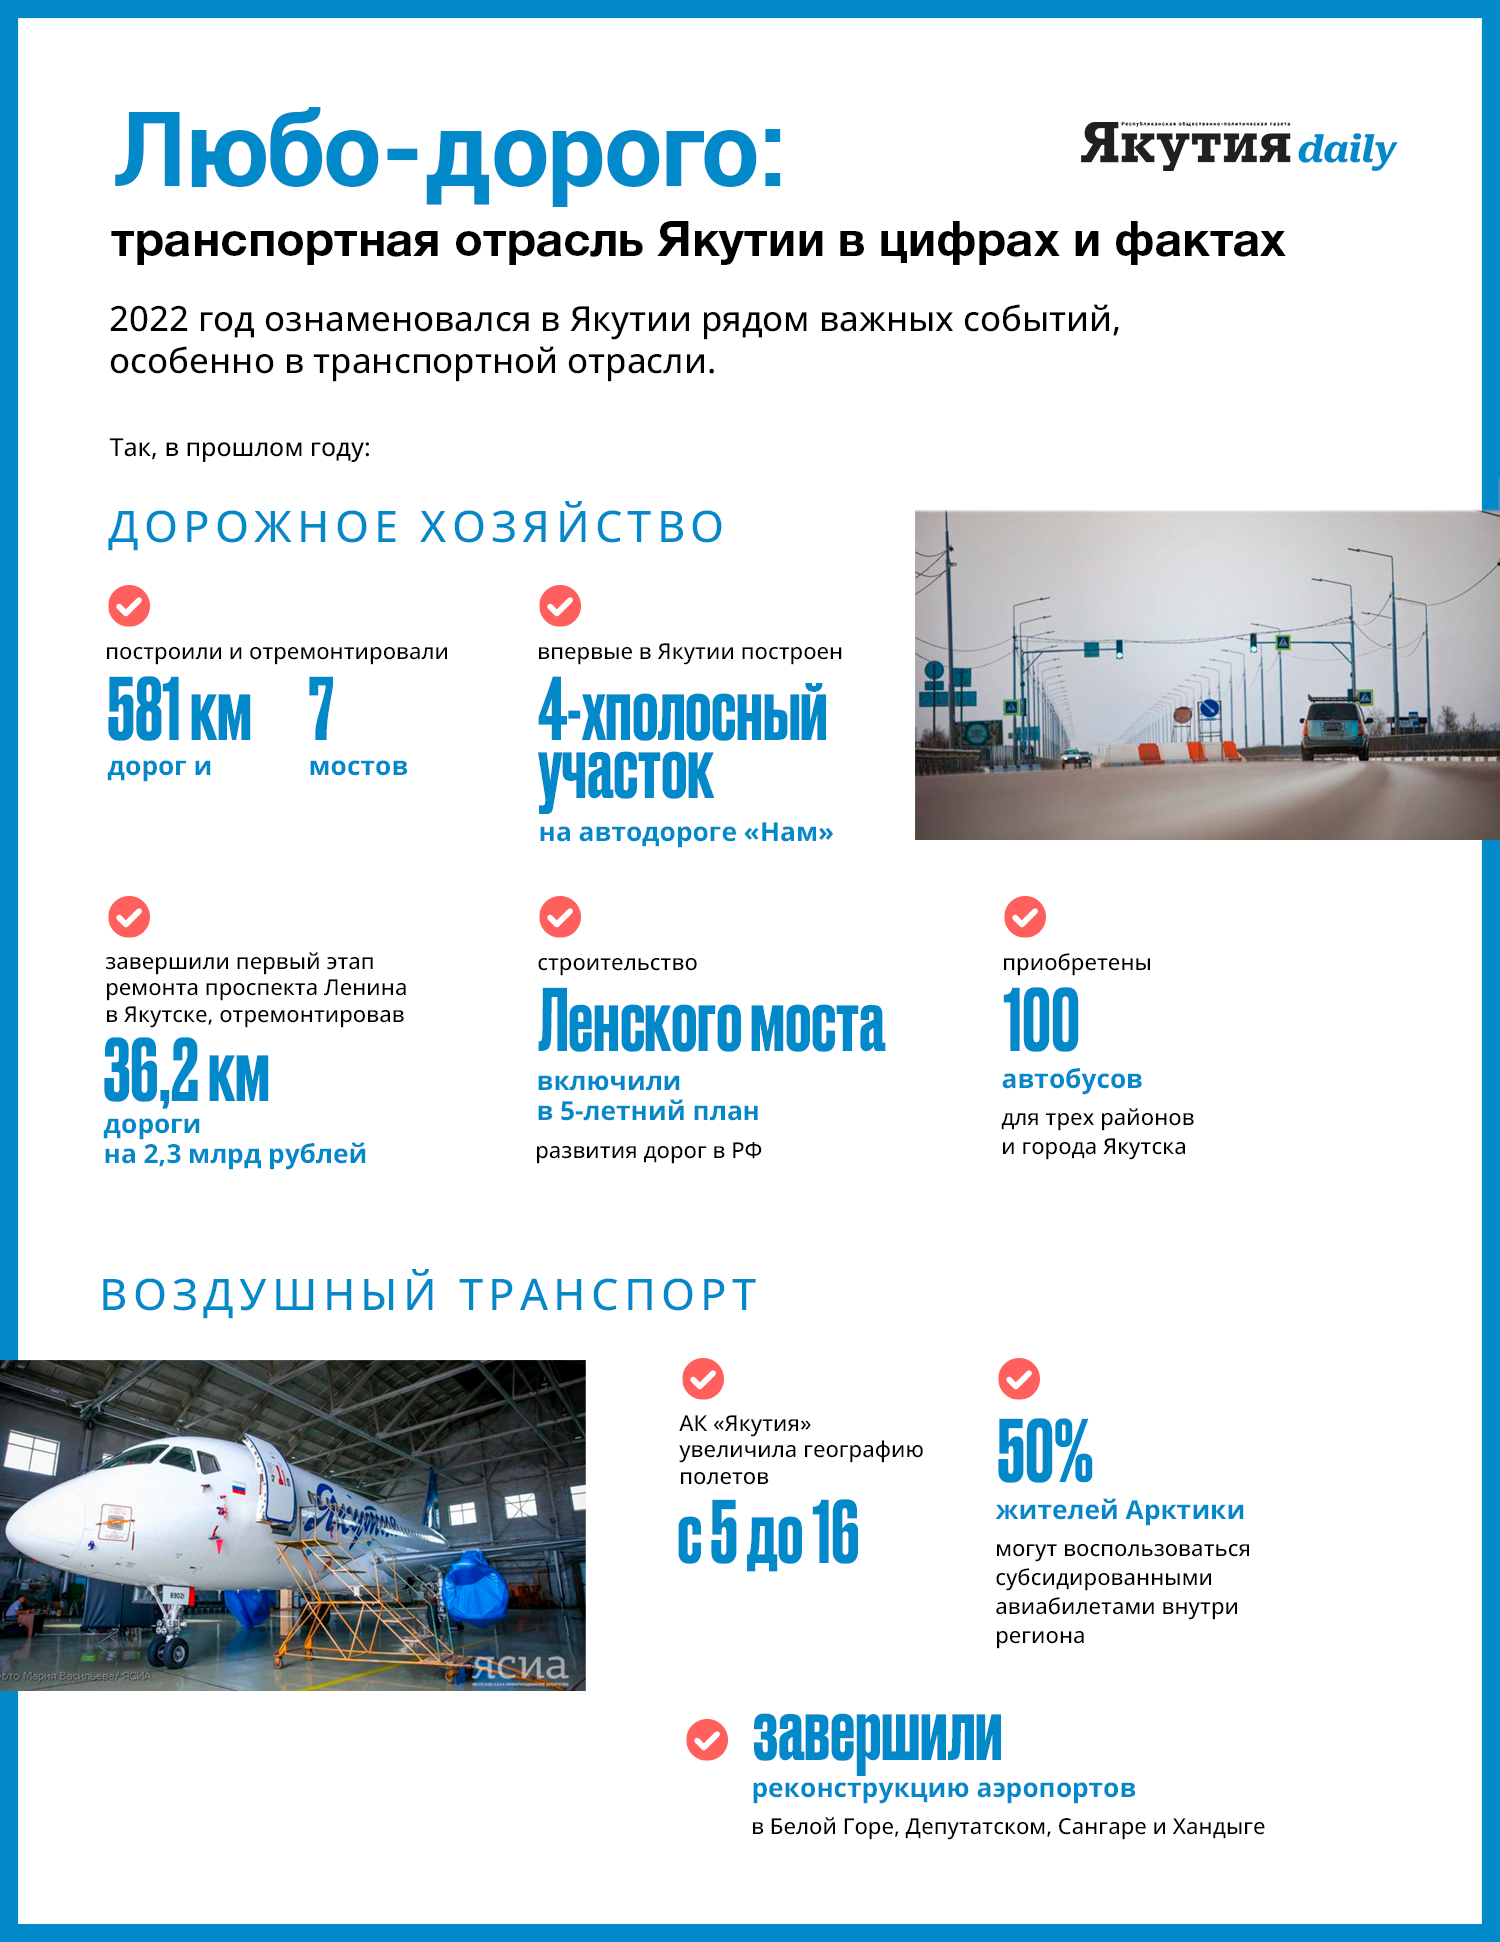 Любо-дорого: транспортная отрасль Якутии — в цифрах и фактах